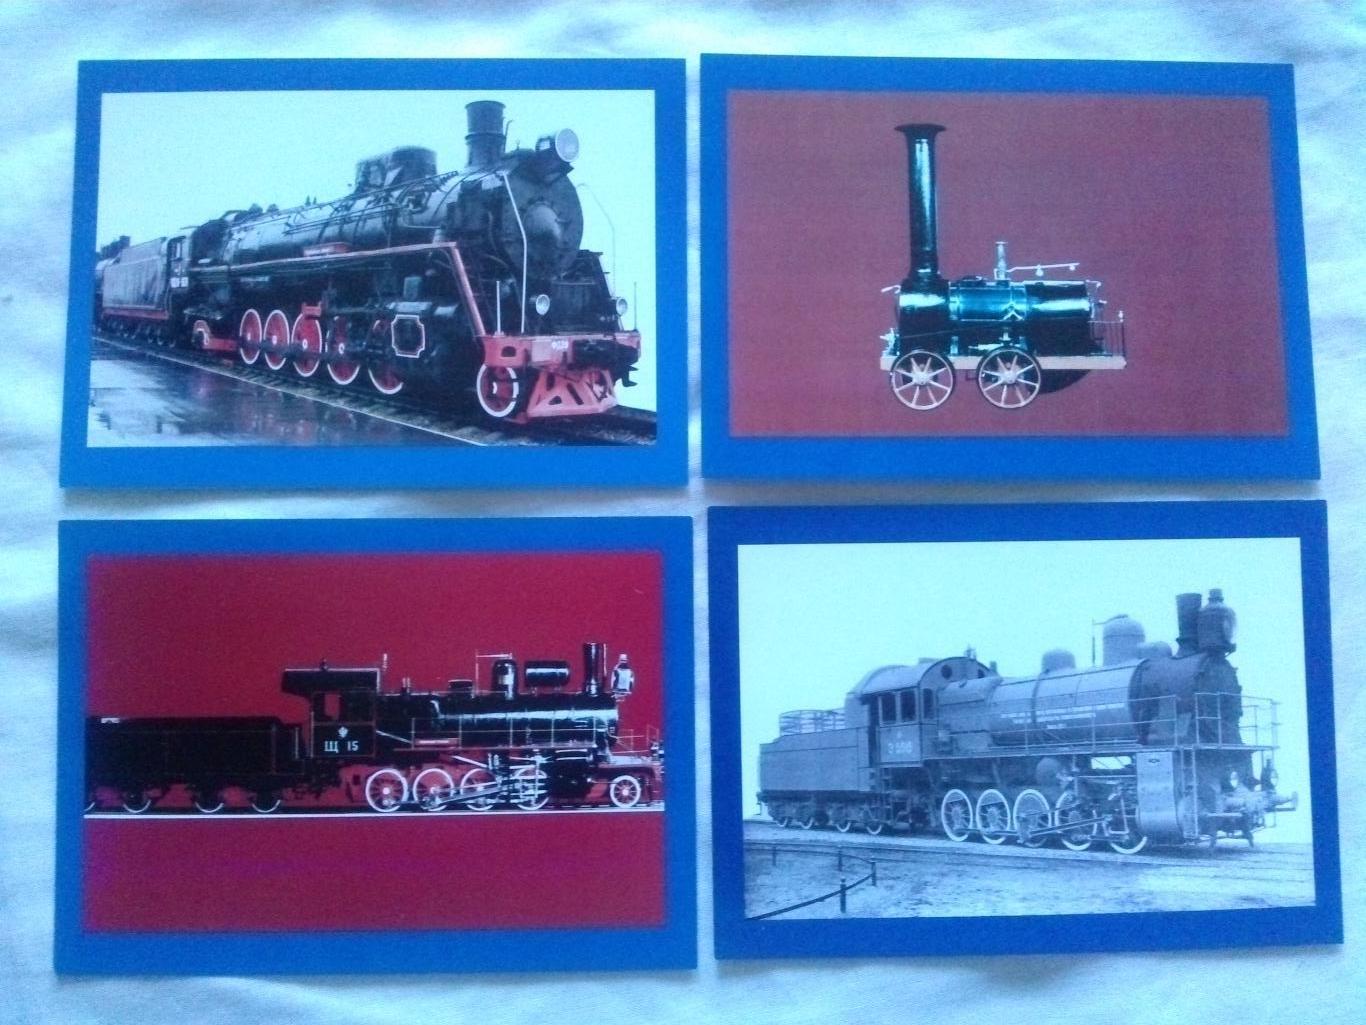 История паровозостроения : полный набор - 12 открыток 2000 - е годы (Транспорт) 3